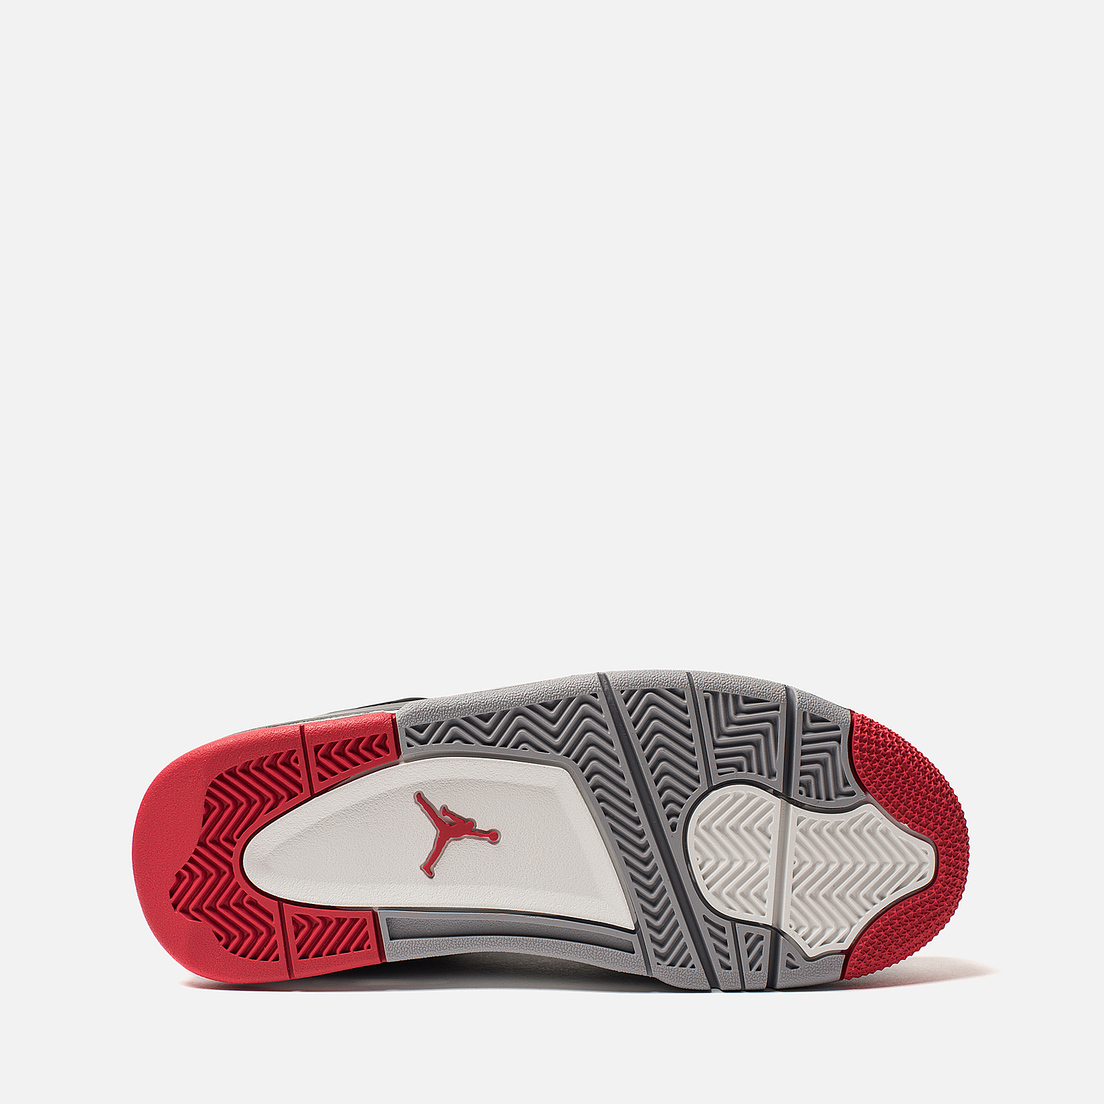 Jordan Подростковые кроссовки Air Jordan 4 Retro GS